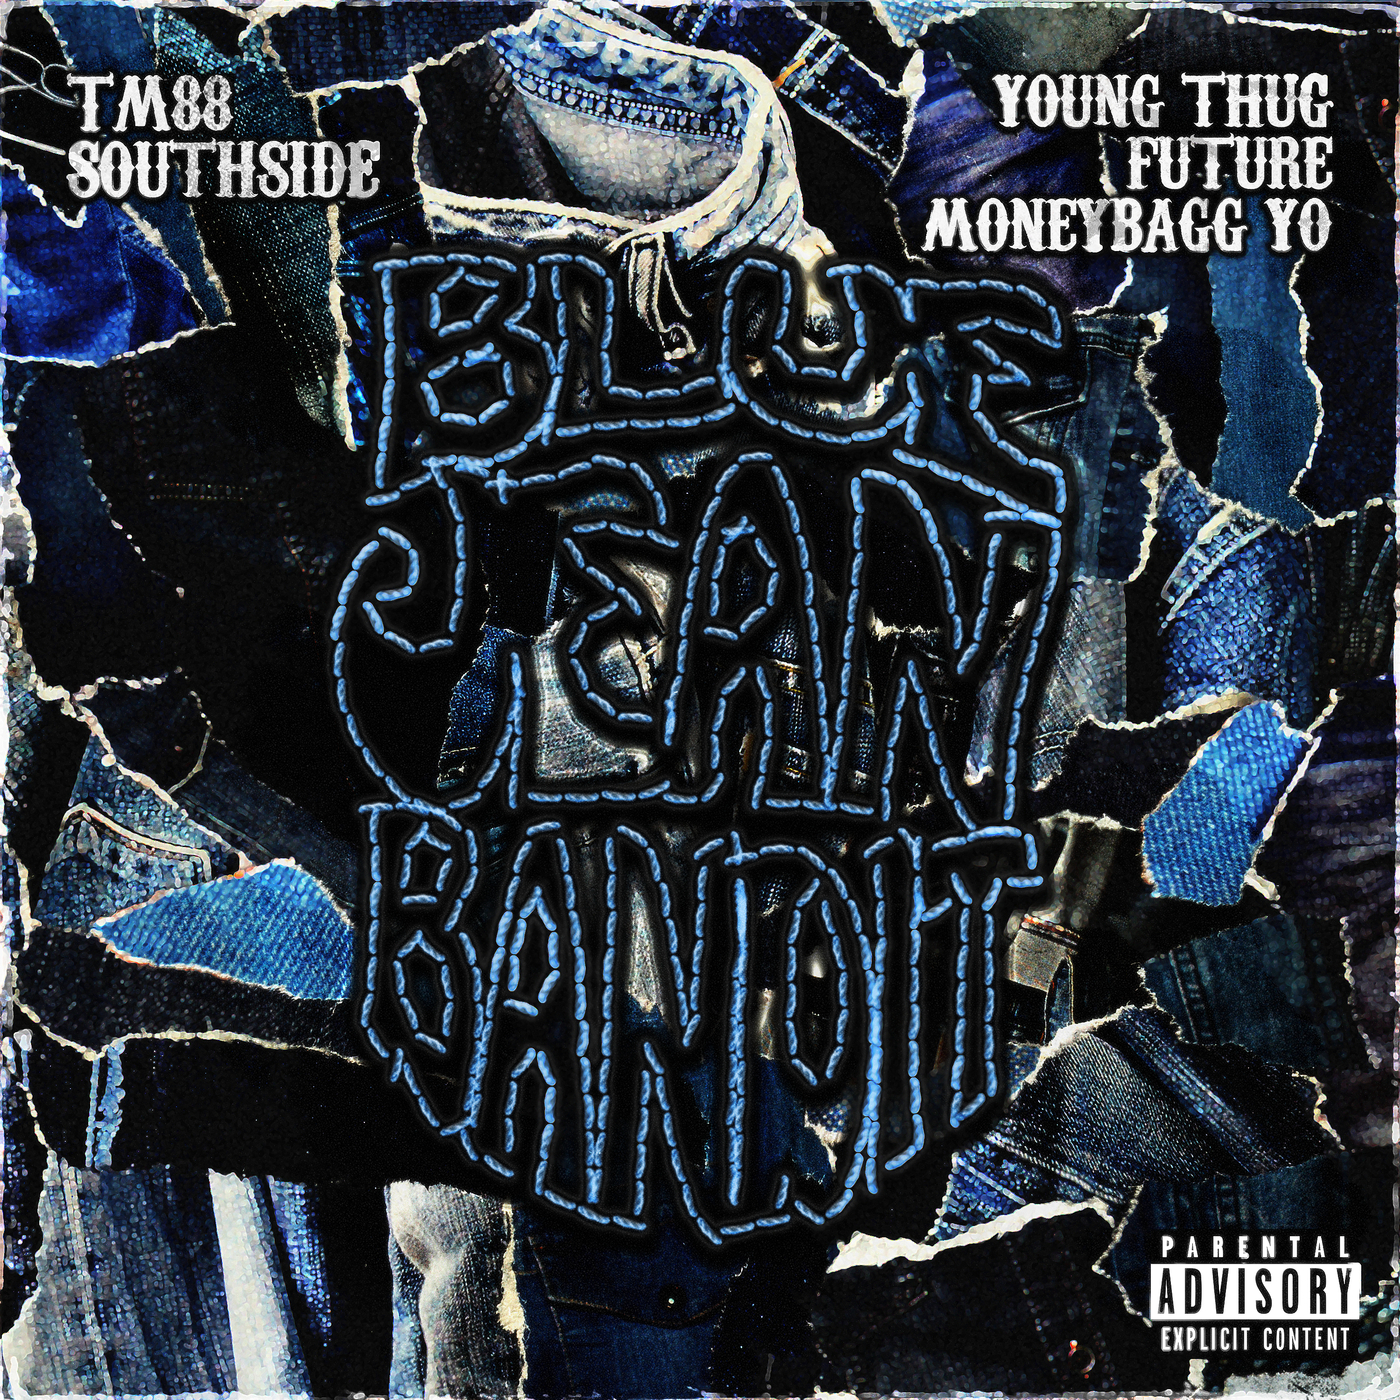 ဒေါင်းလုပ် TM88, Southside, Moneybagg Yo - Blue Jean Bandit (feat. Young Thug & Future)